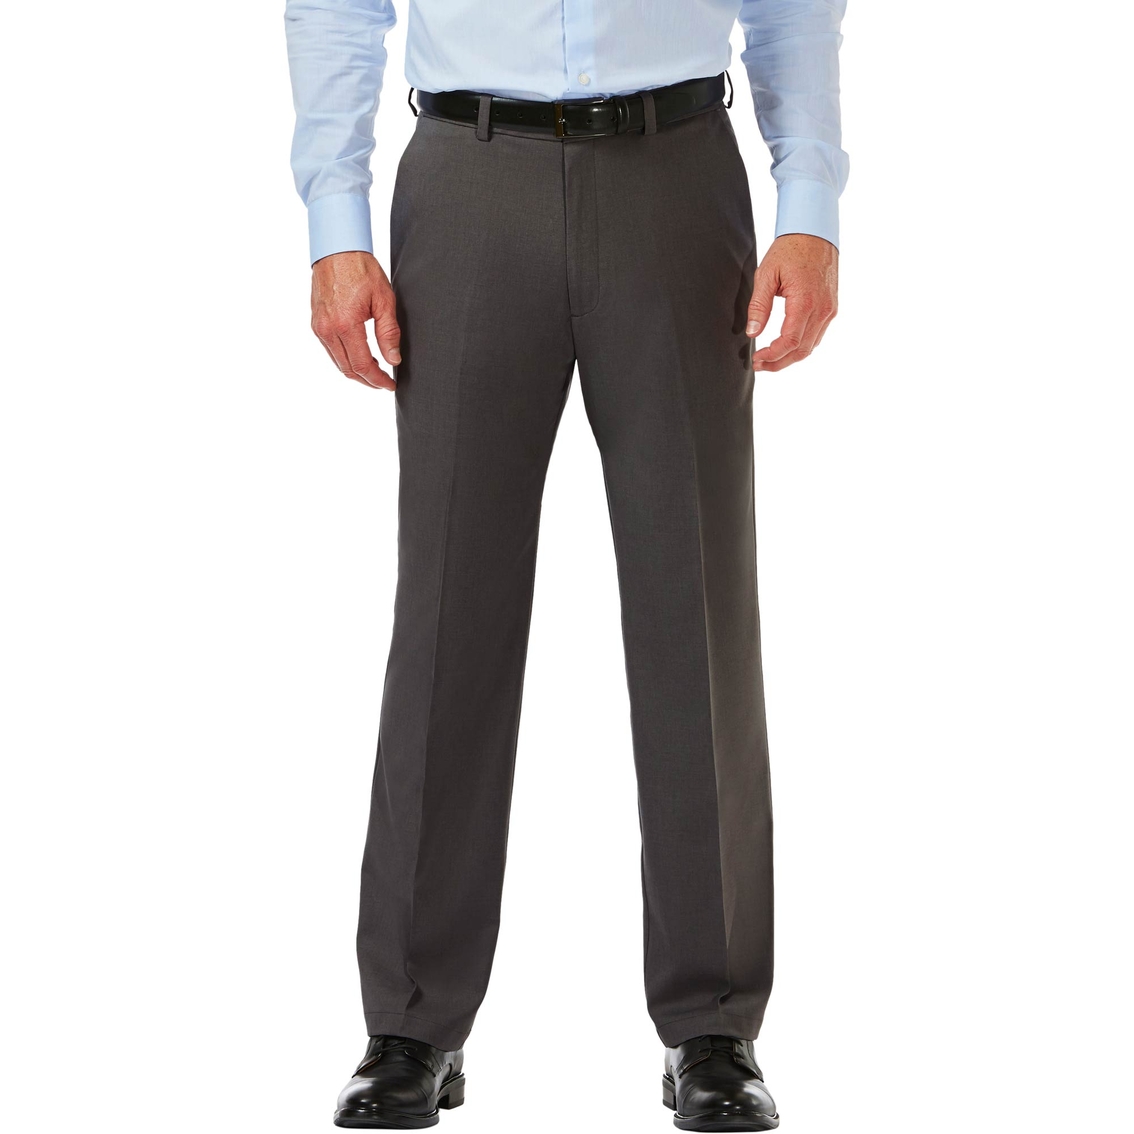 Haggar Cool 18 Pro Classic Fit Flat Front Pants | Pants | Apparel ...